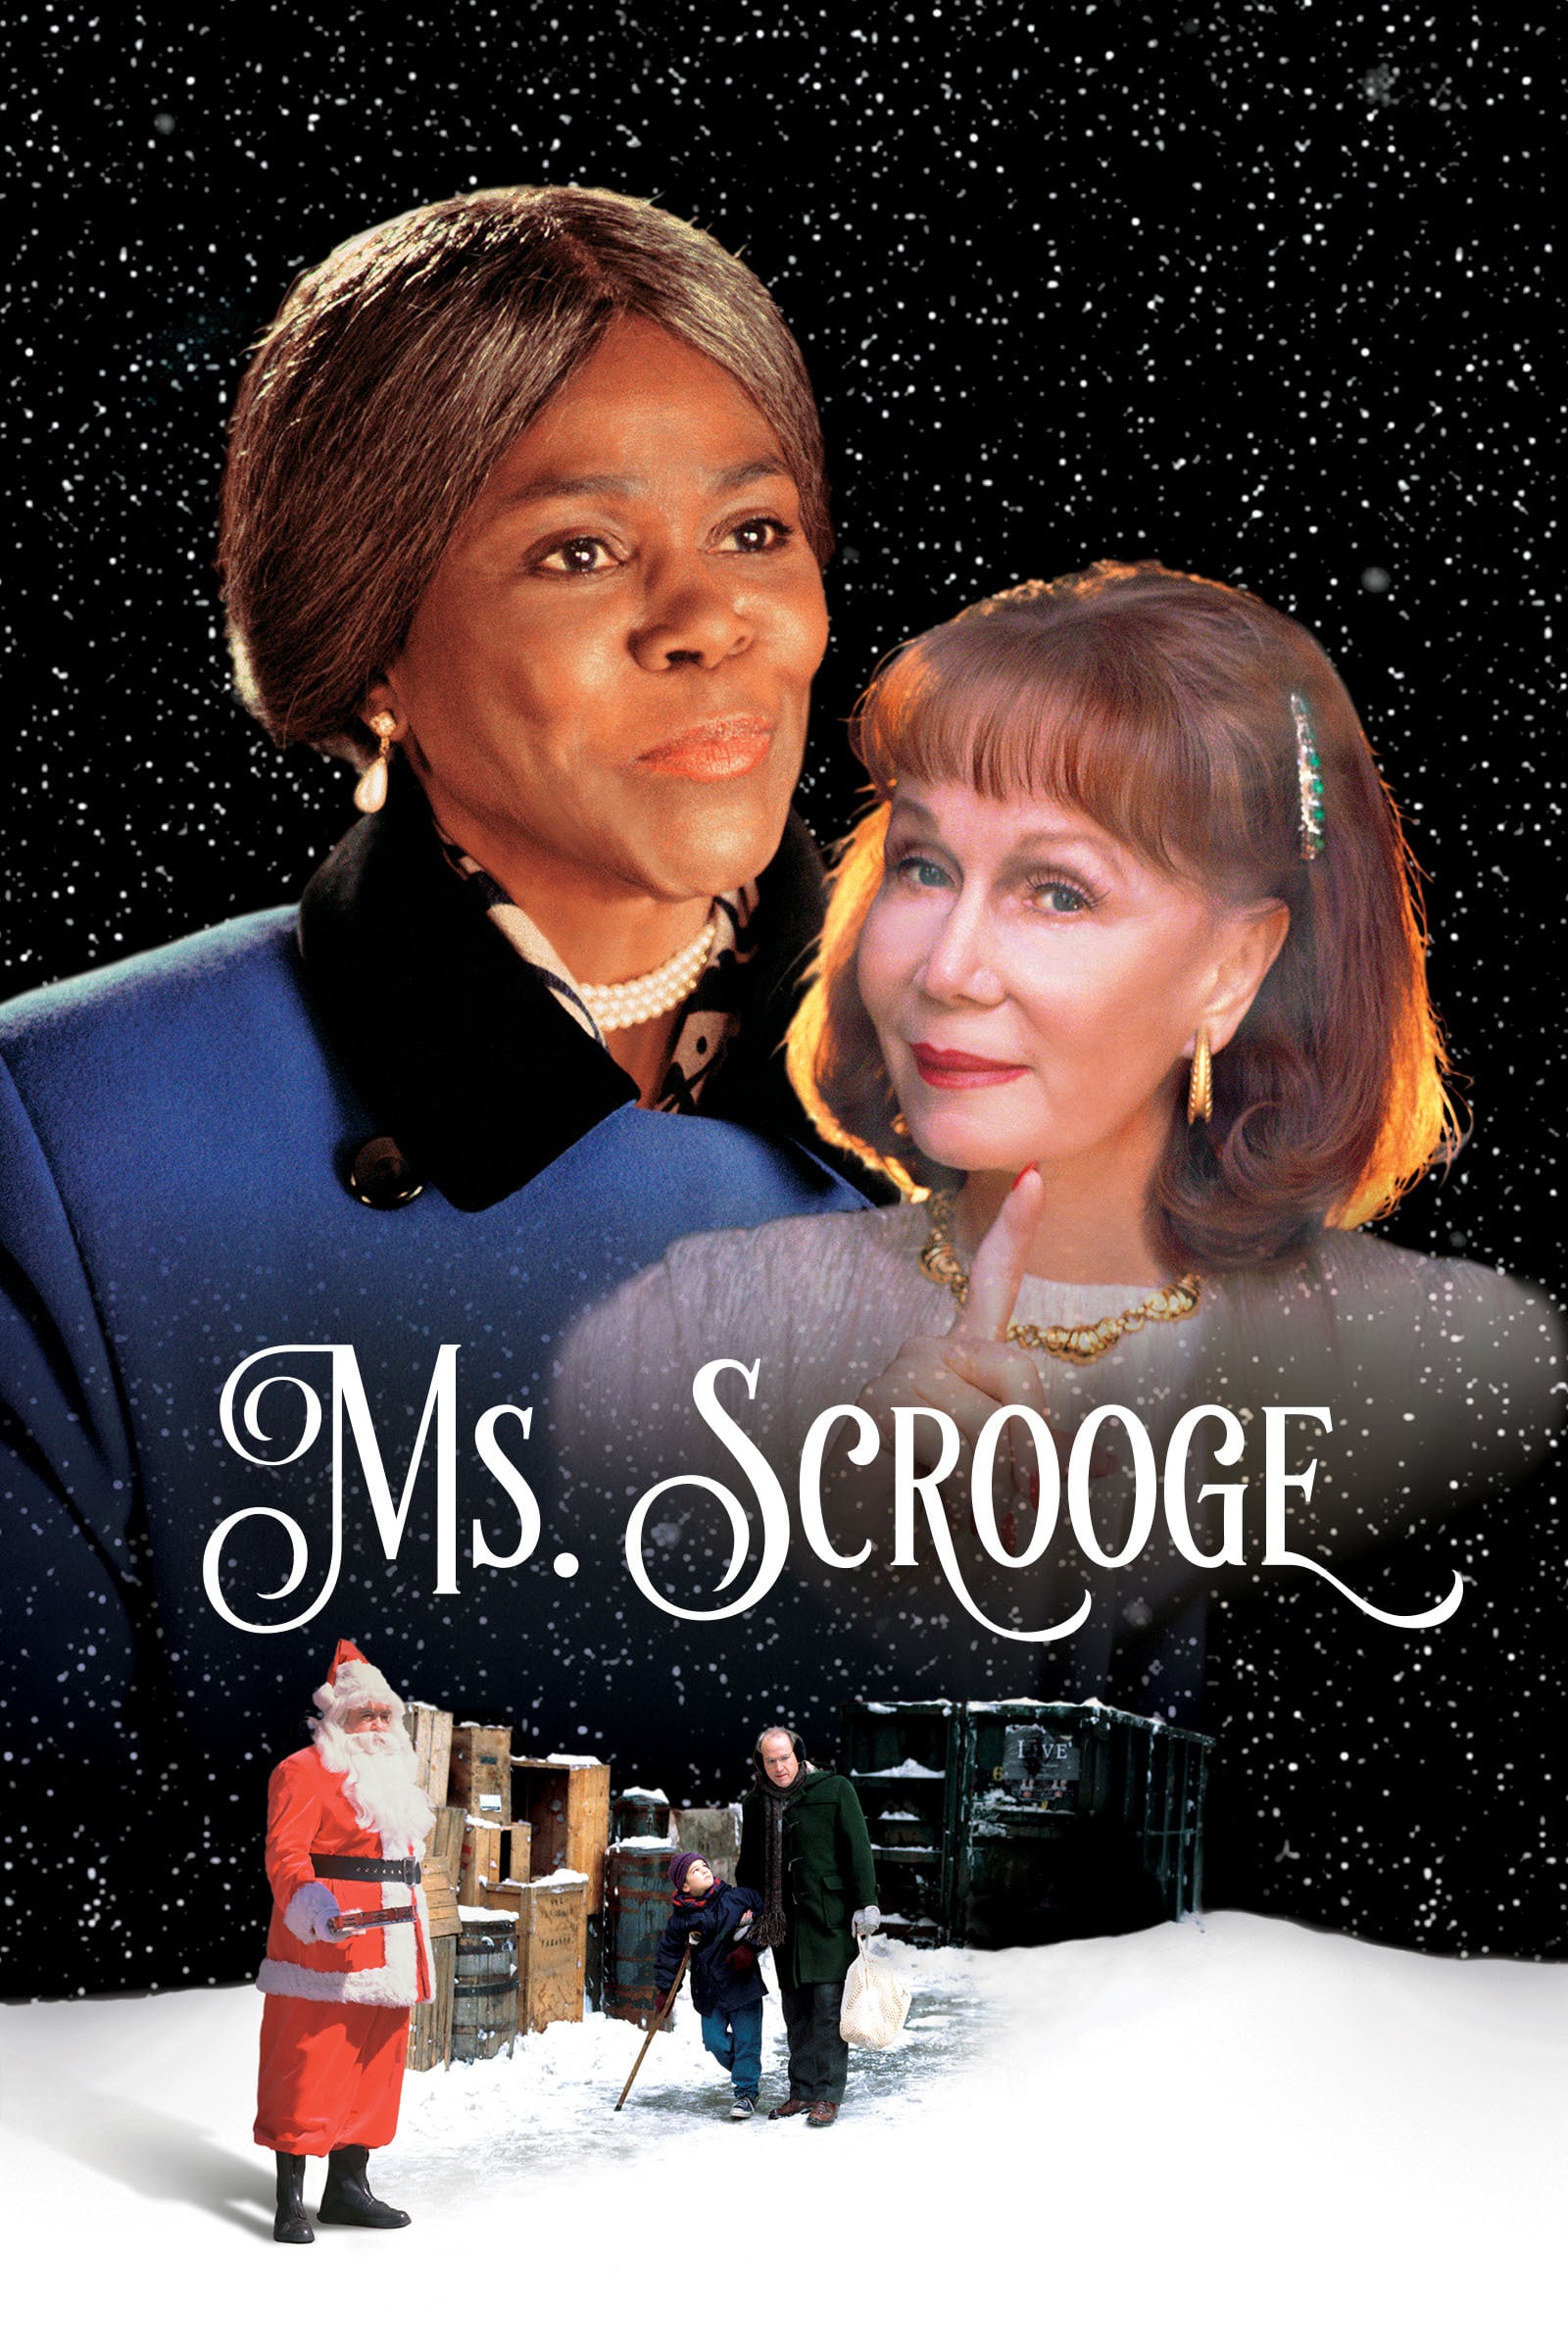 Ms. Scrooge film